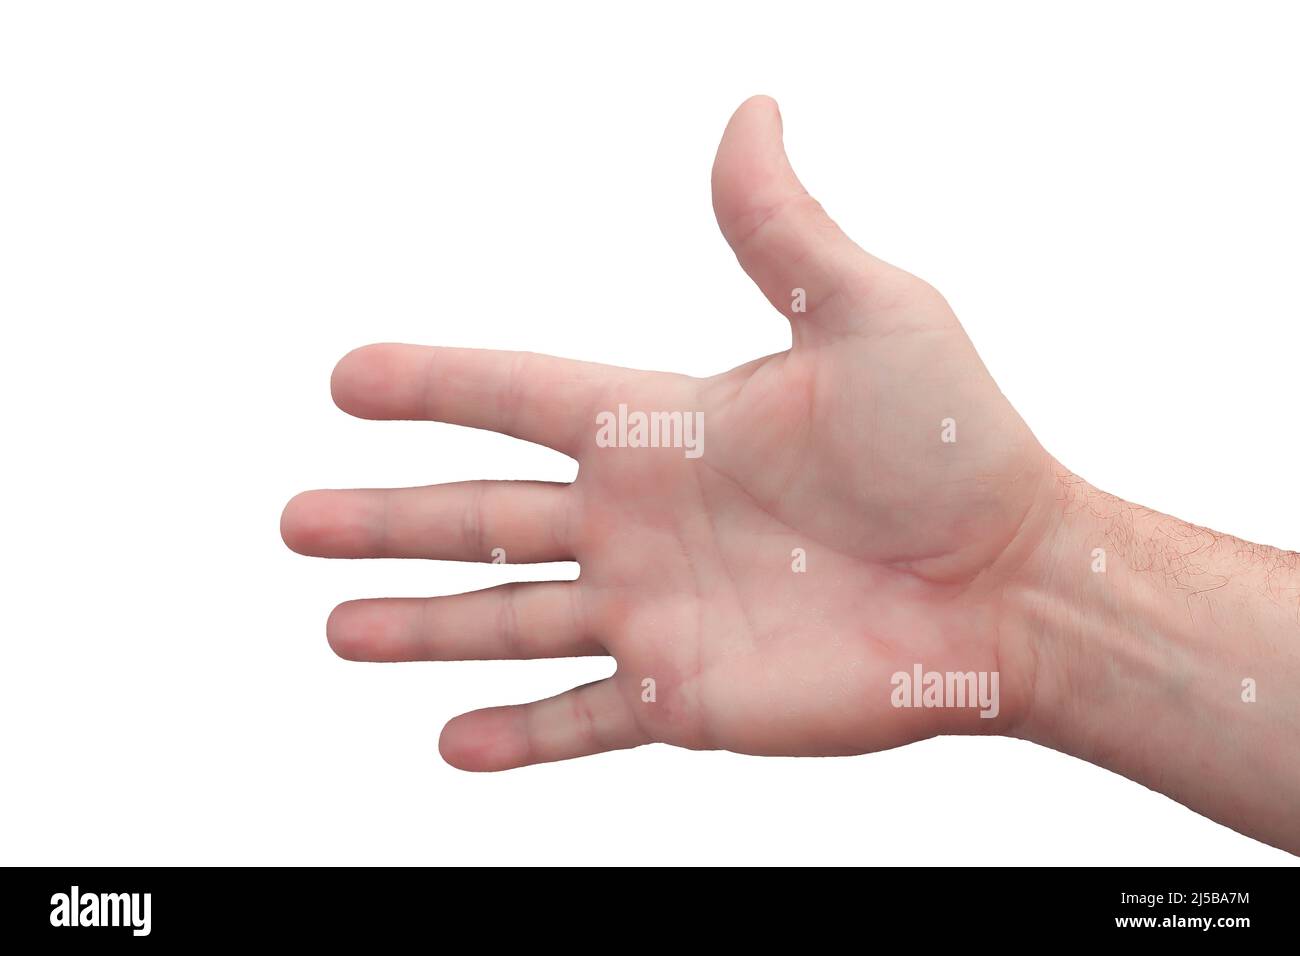 La main d'un homme est rapprochée sur fond blanc. Isoler. Banque D'Images